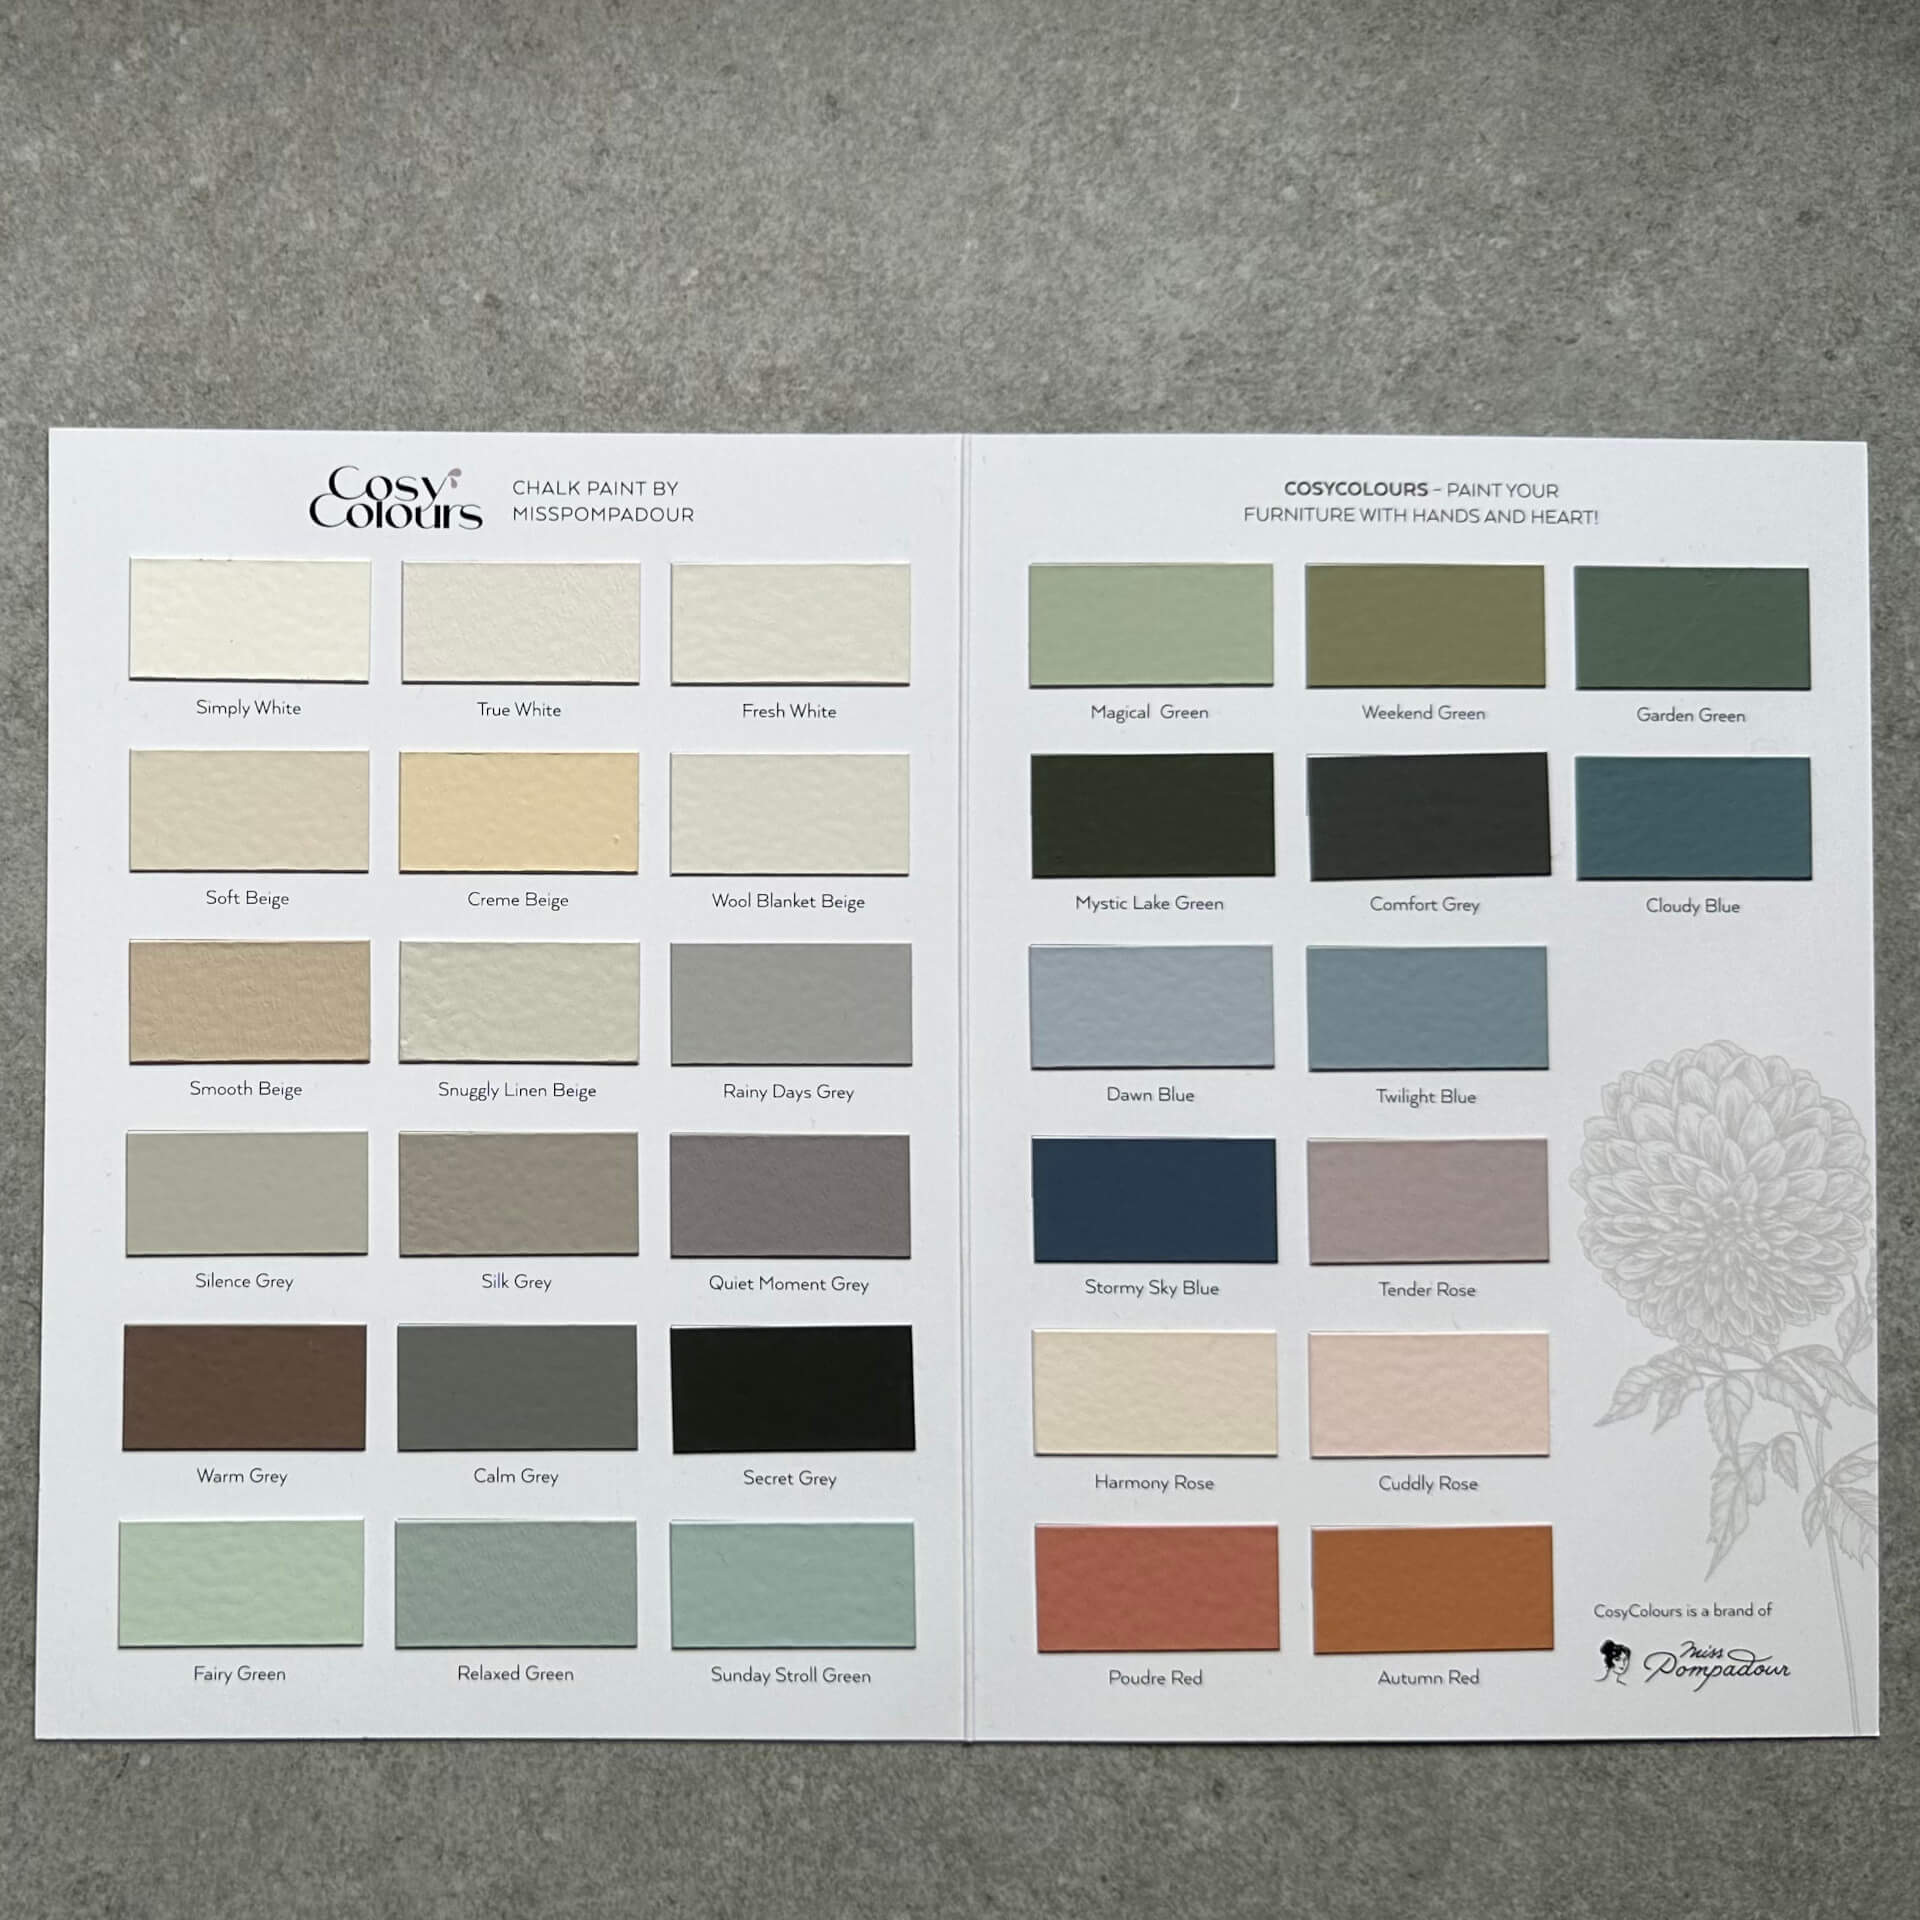 Kleurenkaart - CosyColours collectie - Kleurenkaart